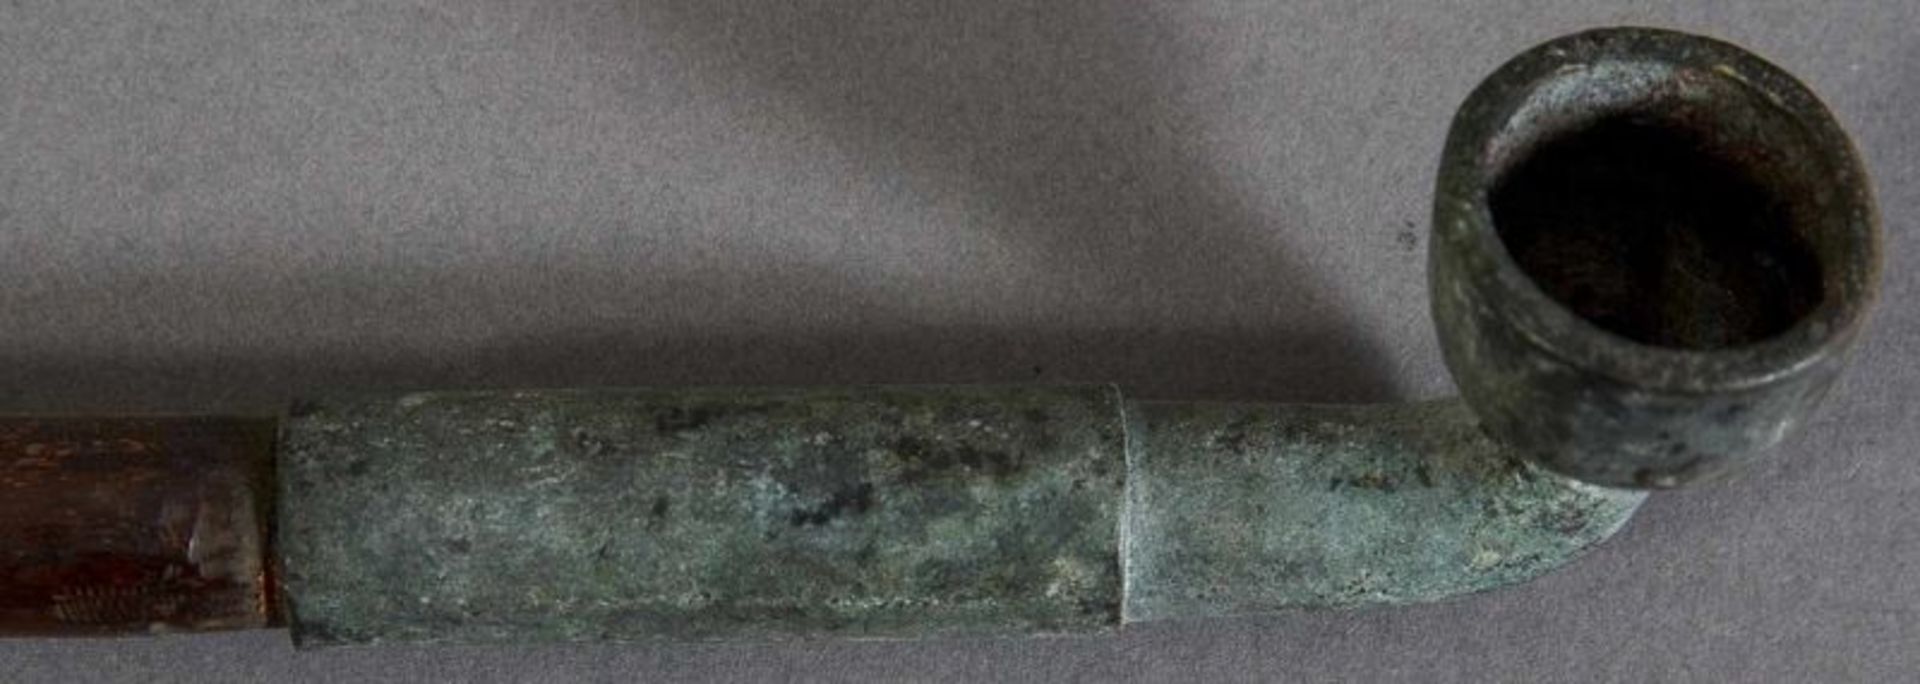 Alte/antike Pfeife, China, Anfang 20. Jhd. Bambusrohr mit korrodierter Brennstelle und - Image 3 of 4